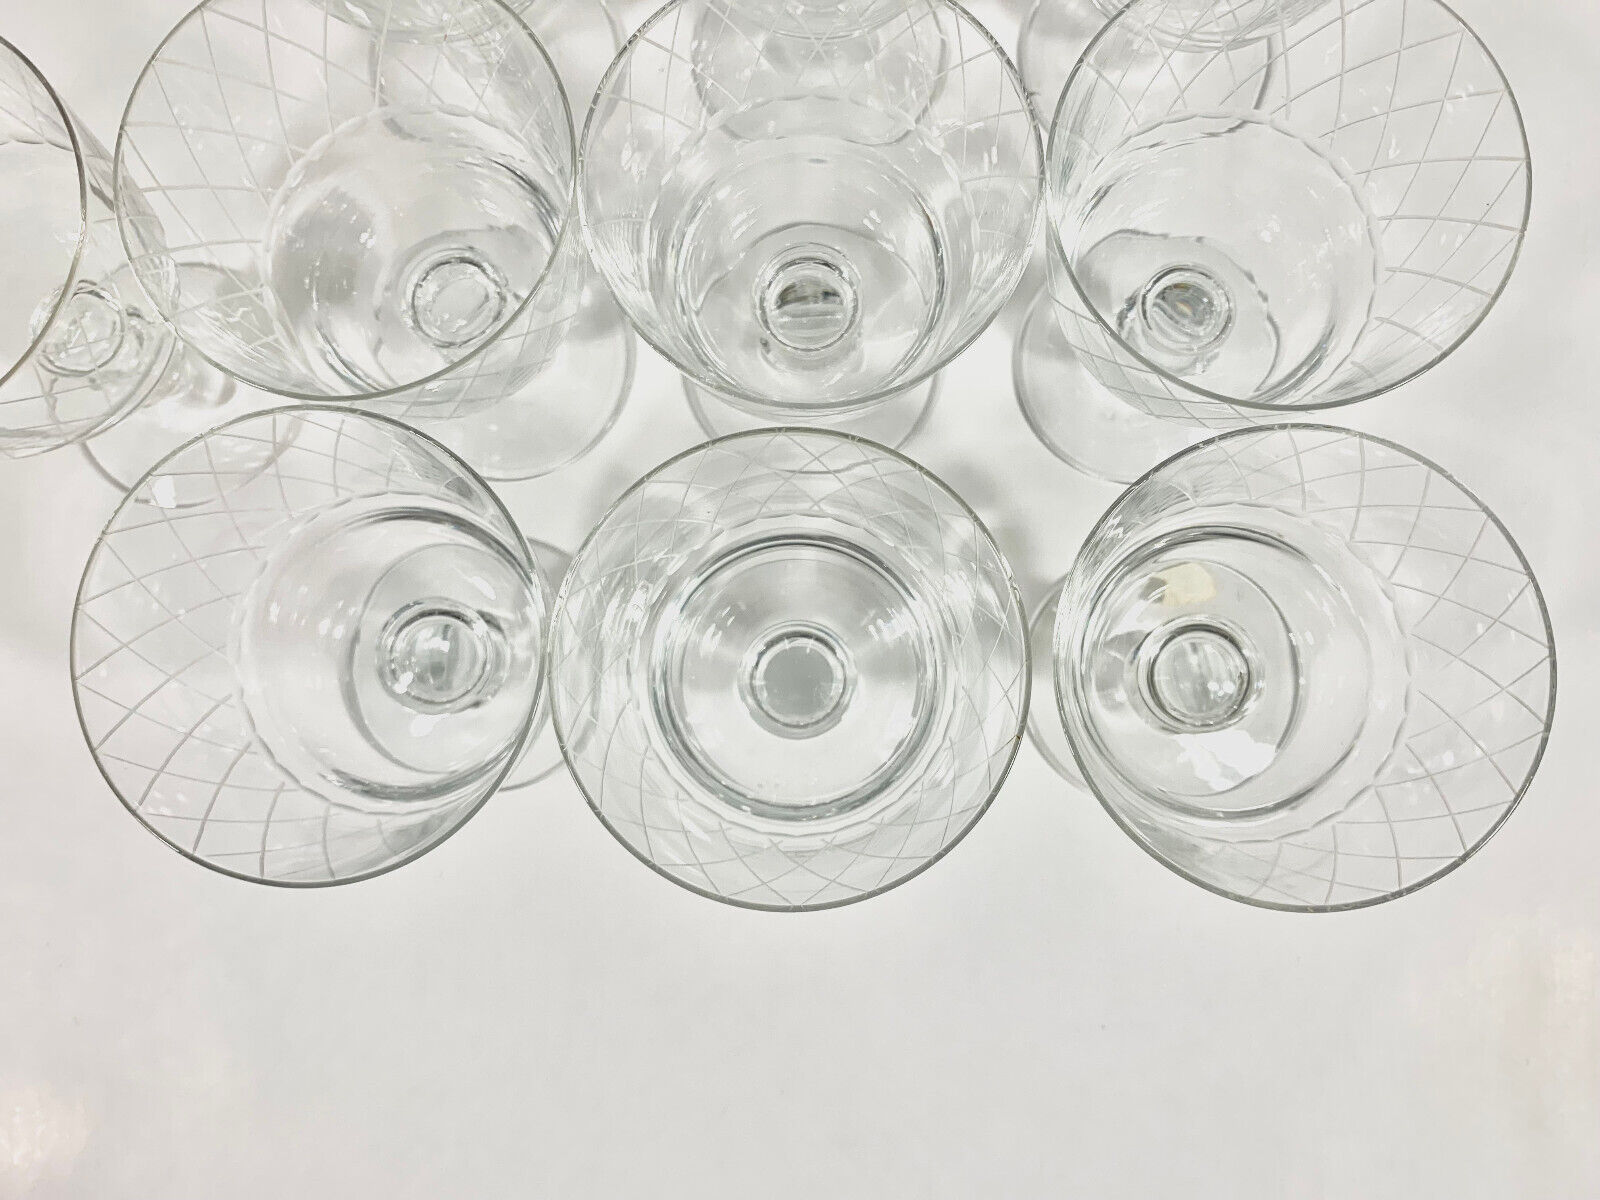 10x Kosta Boda Vicke Lindstrand Sickan Crystal Wine Glass Water Goblet 11 cm